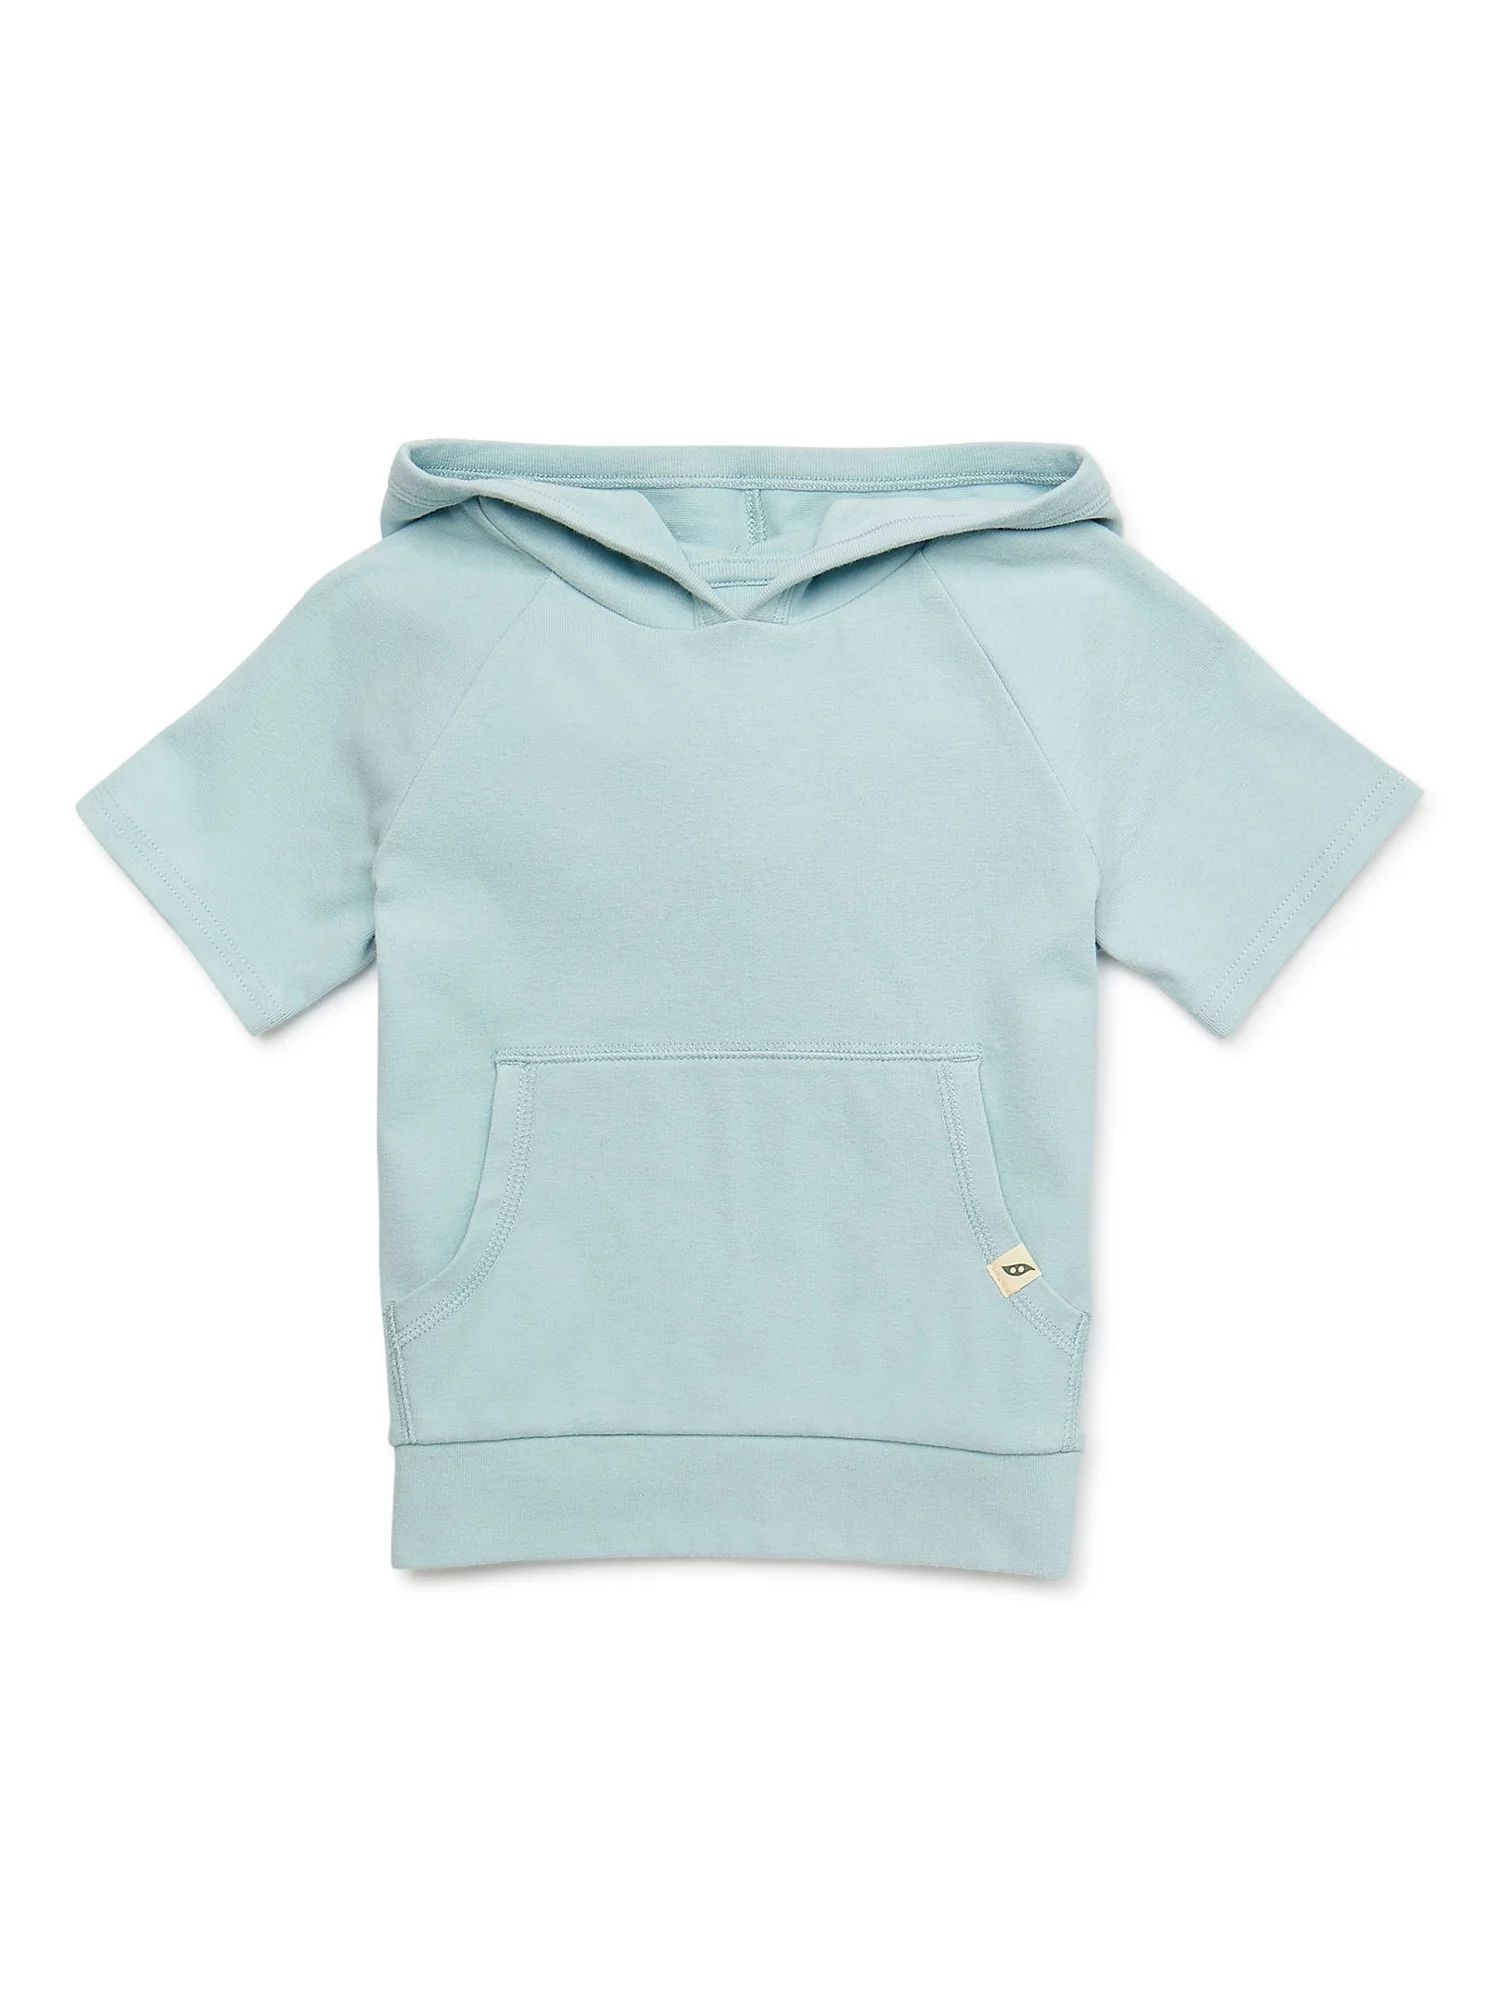 easy-peasy Toddler Boy Short Sleeve Hoodie, Sizes 12M-5T | Walmart (US)